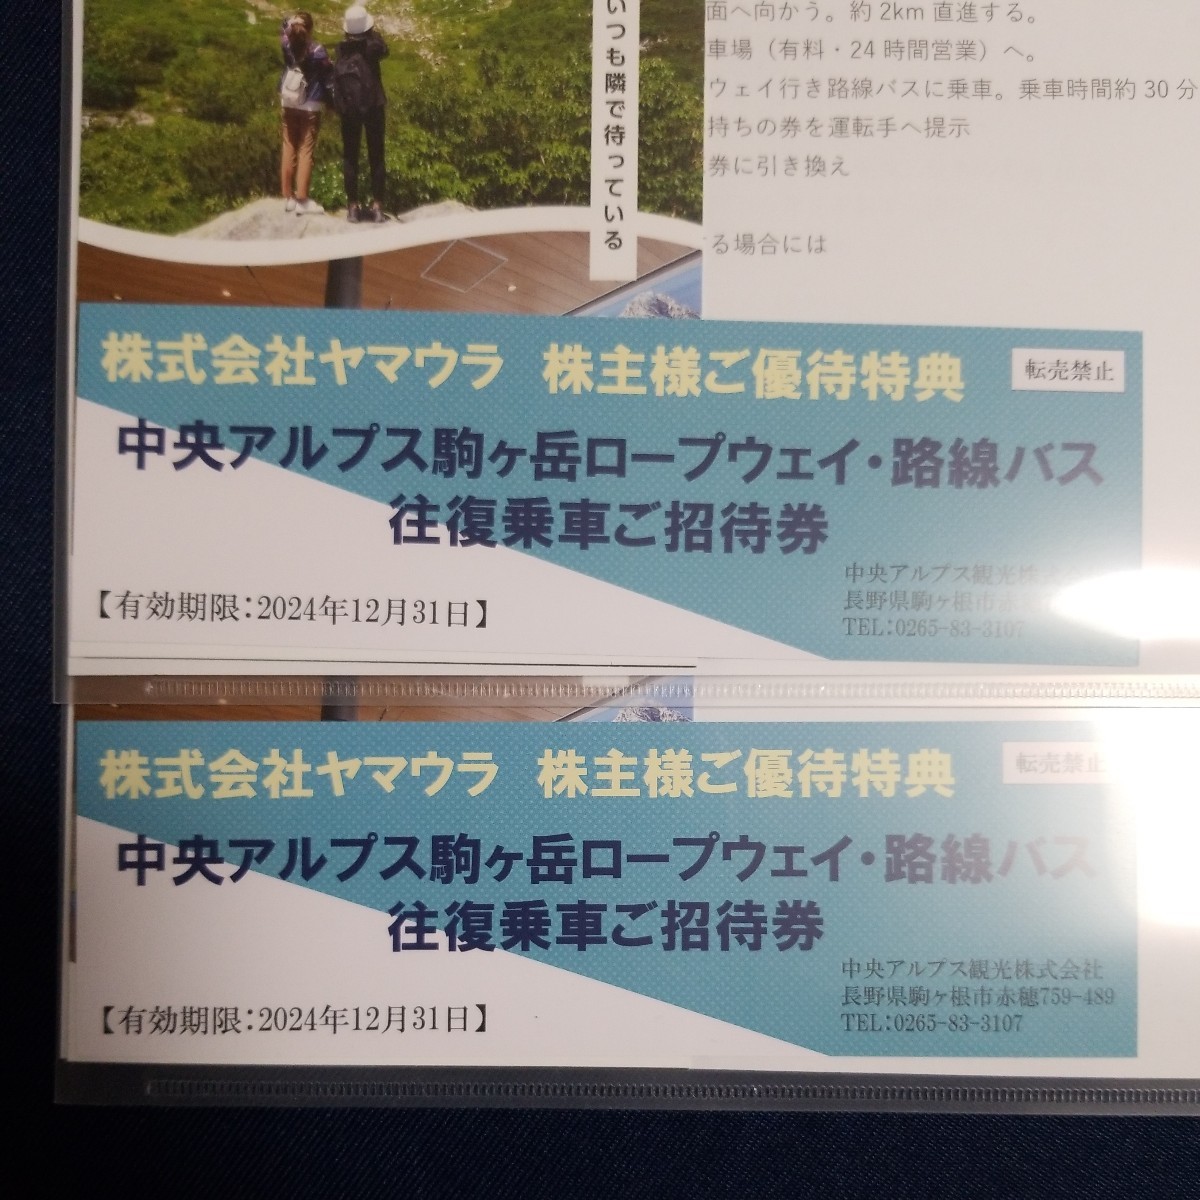 最新 ヤマウラ 株主優待 駒ヶ岳ロープウェイ 路線バス 往復乗車ご招待券 2枚セット 中央アルプス_画像1